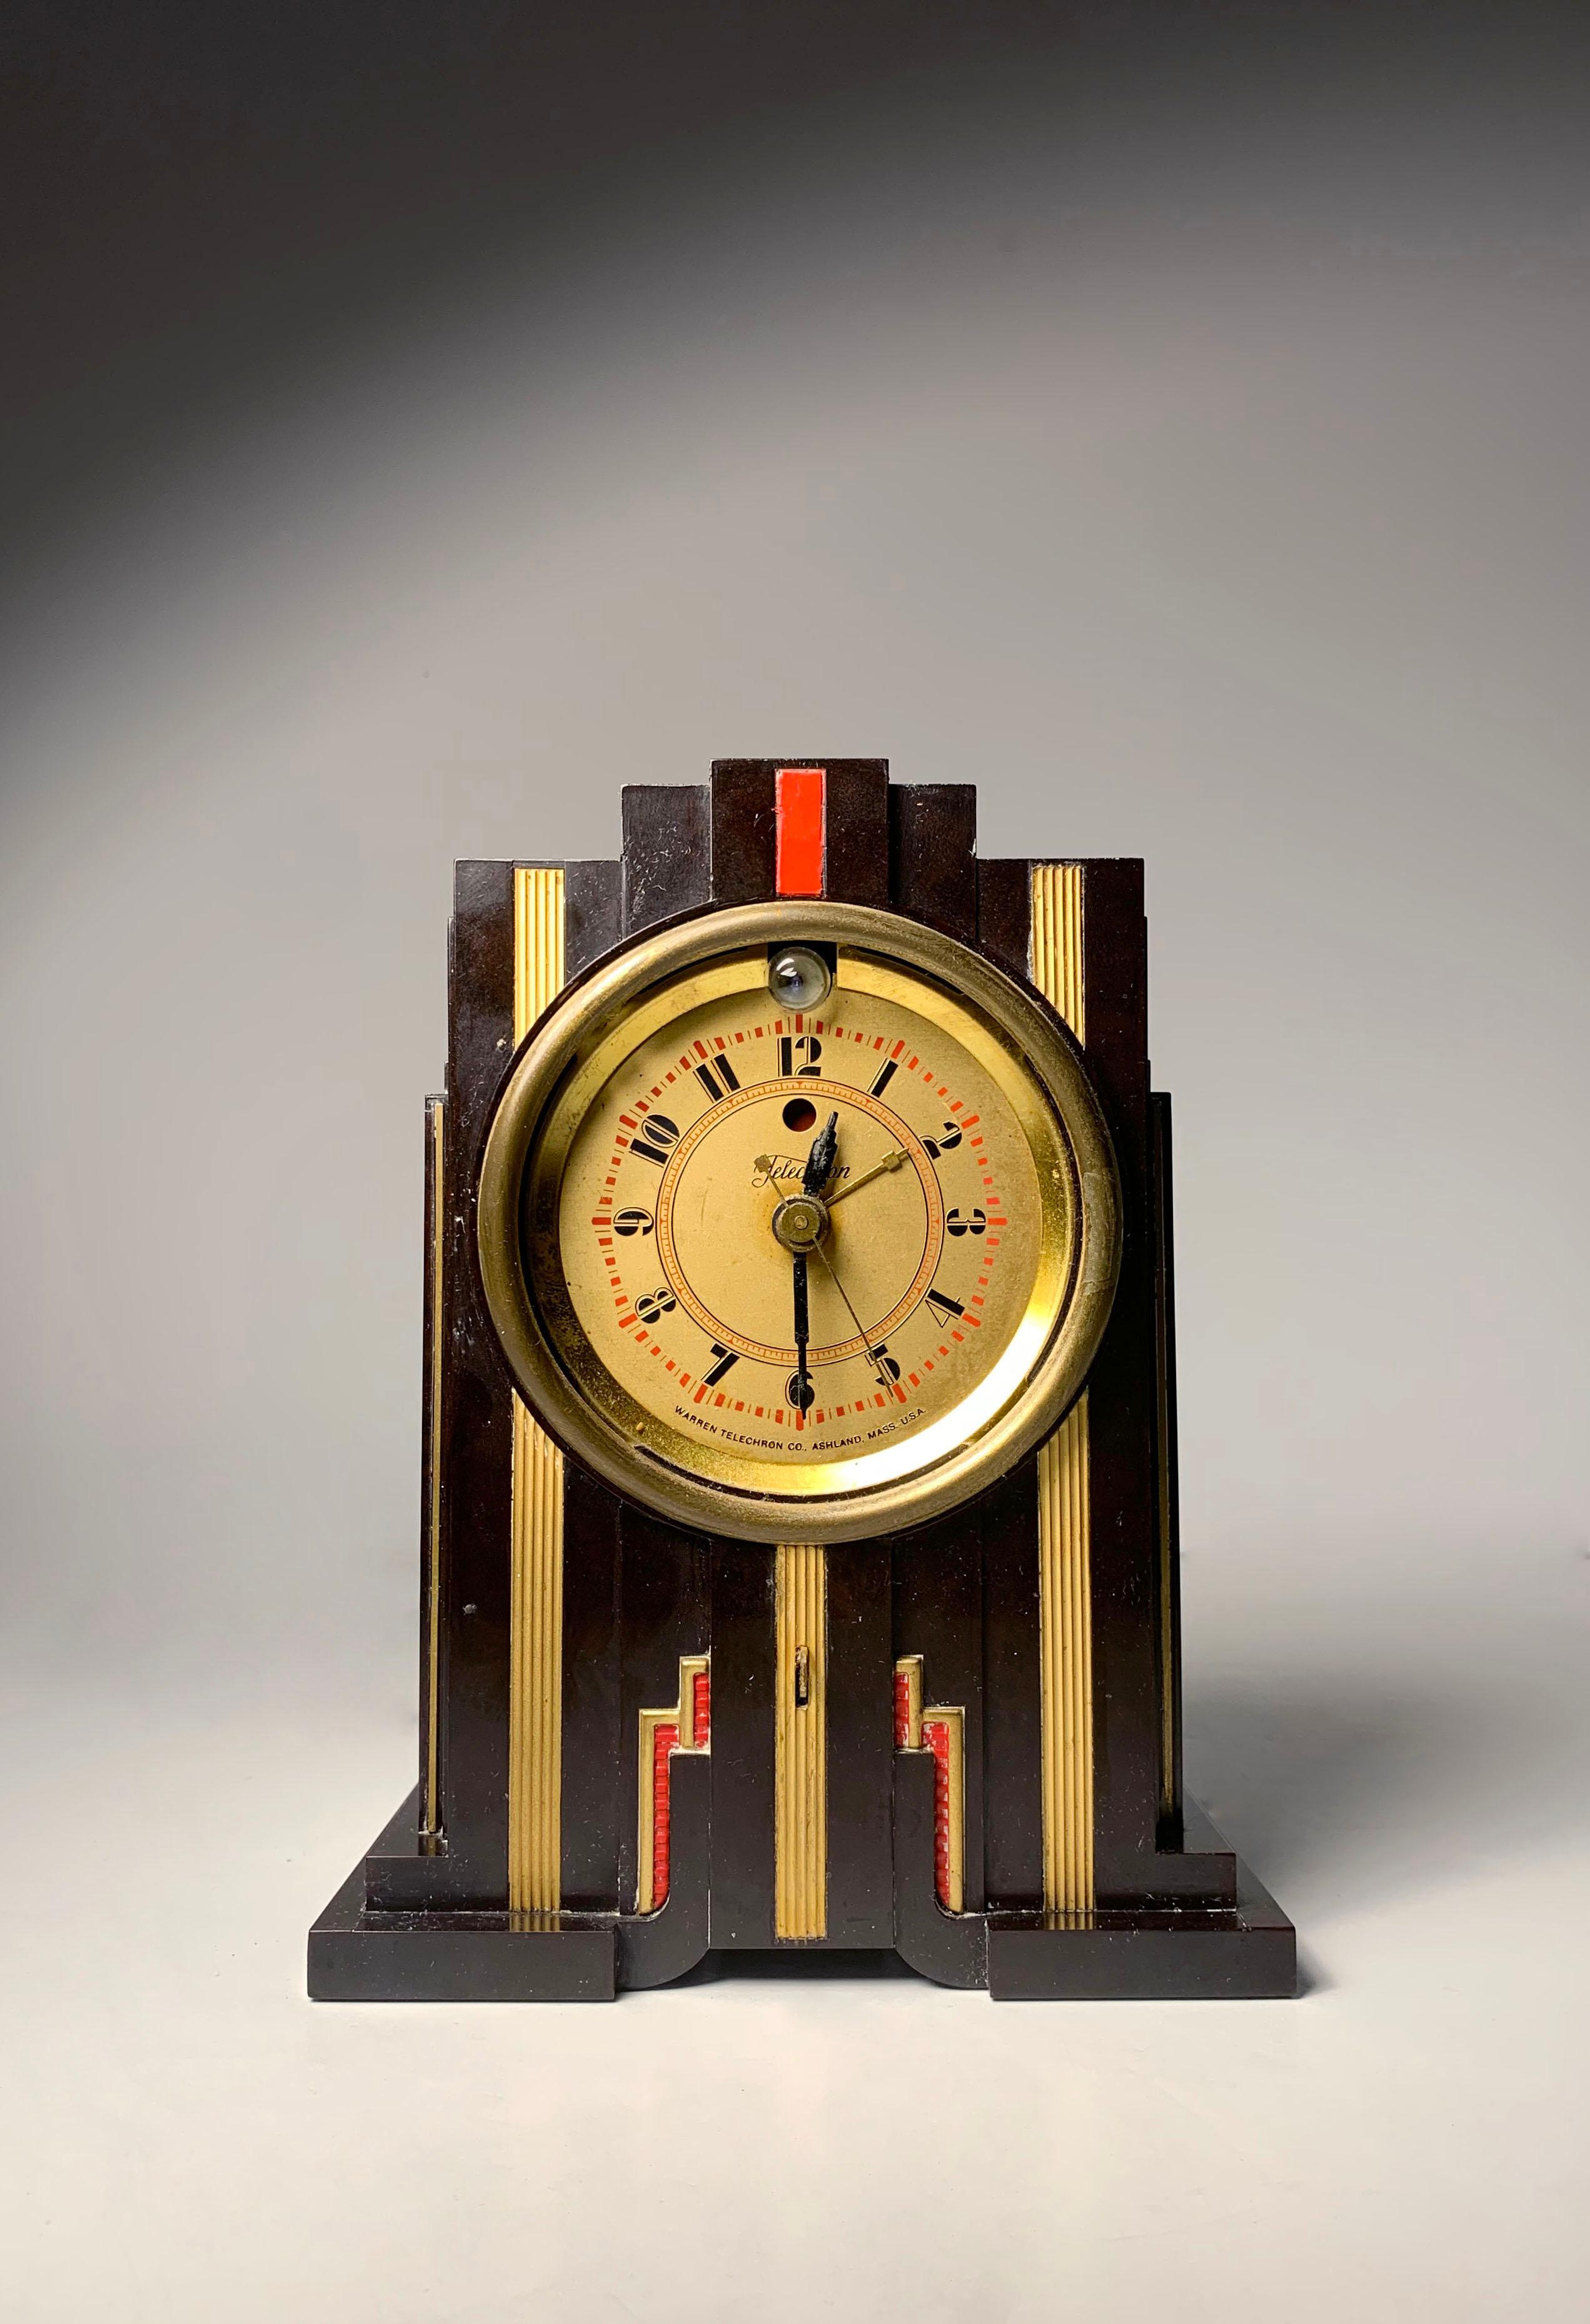 Schöne Art Deco Bakelit Telechron Uhr in der Art von Paul Frankl

Wie gefunden Zustand. Es fehlt die Glaslinse. Das Metallteil vorne ist lose. Am wichtigsten ist, dass das Walnuss-Bakelit in einem sehr sauberen Zustand zu sein scheint.  Ich gehe